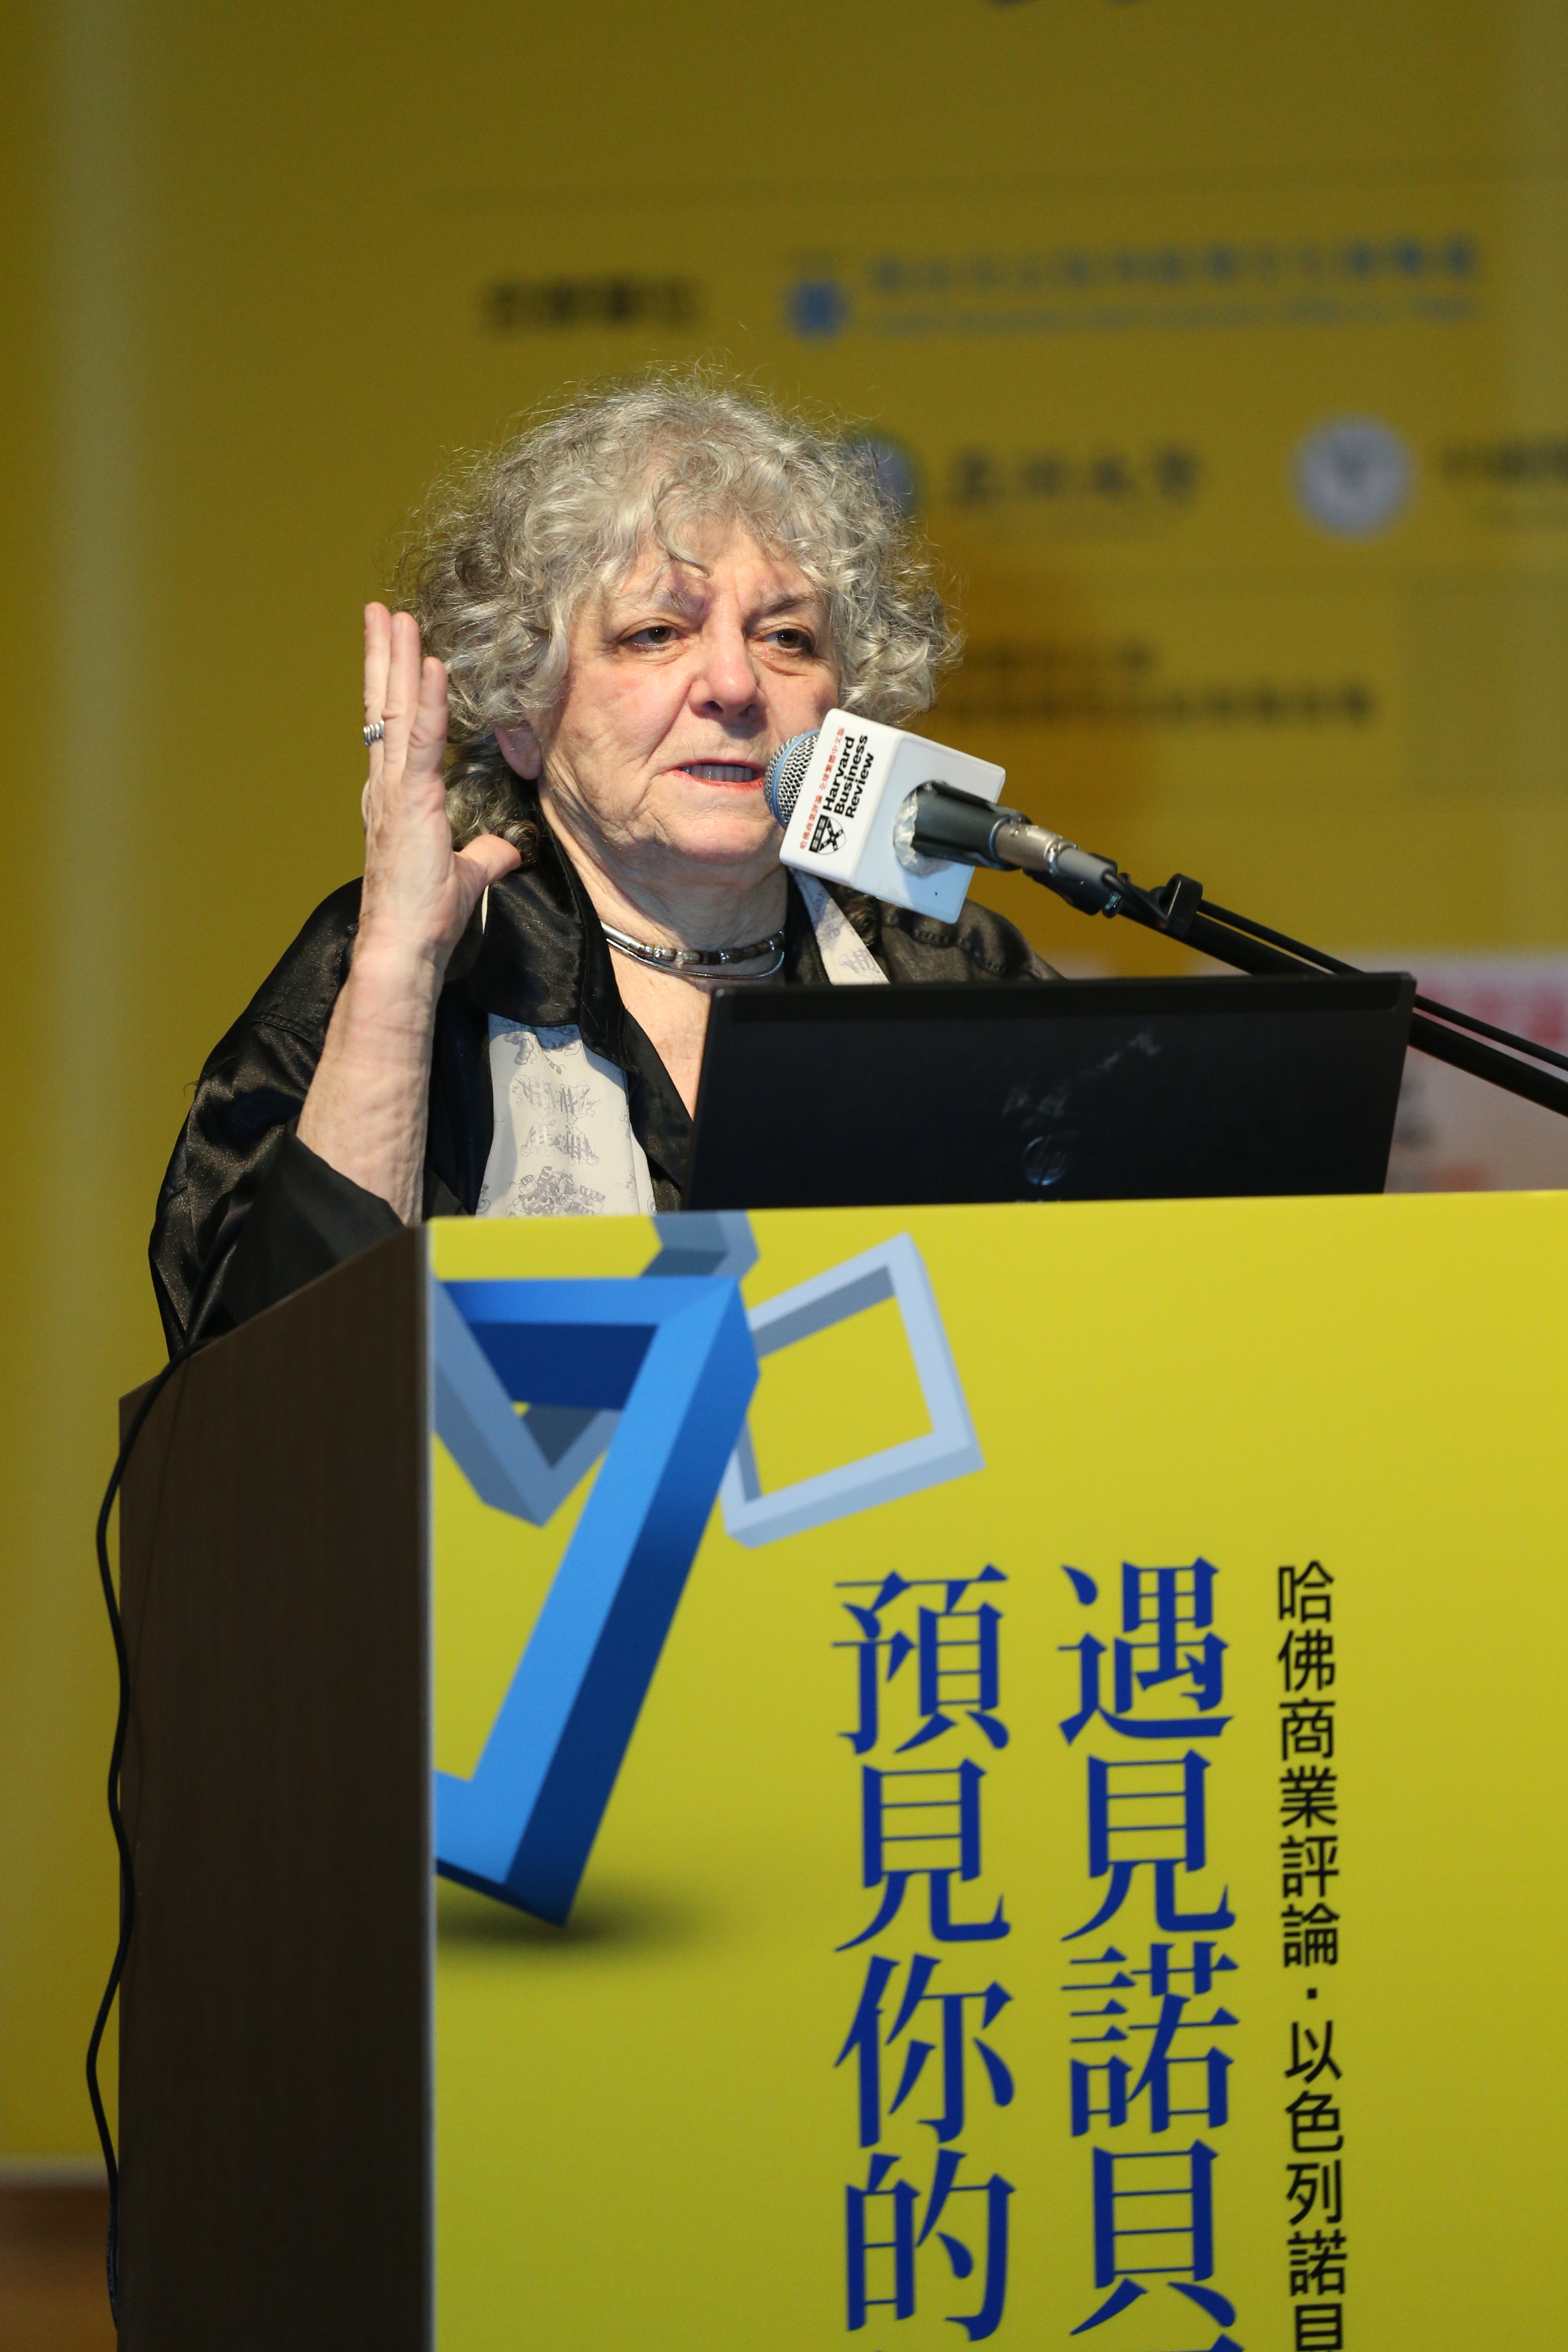  2009年諾貝爾化學獎得主、以色列化學家艾達．尤娜特蒞校演講。